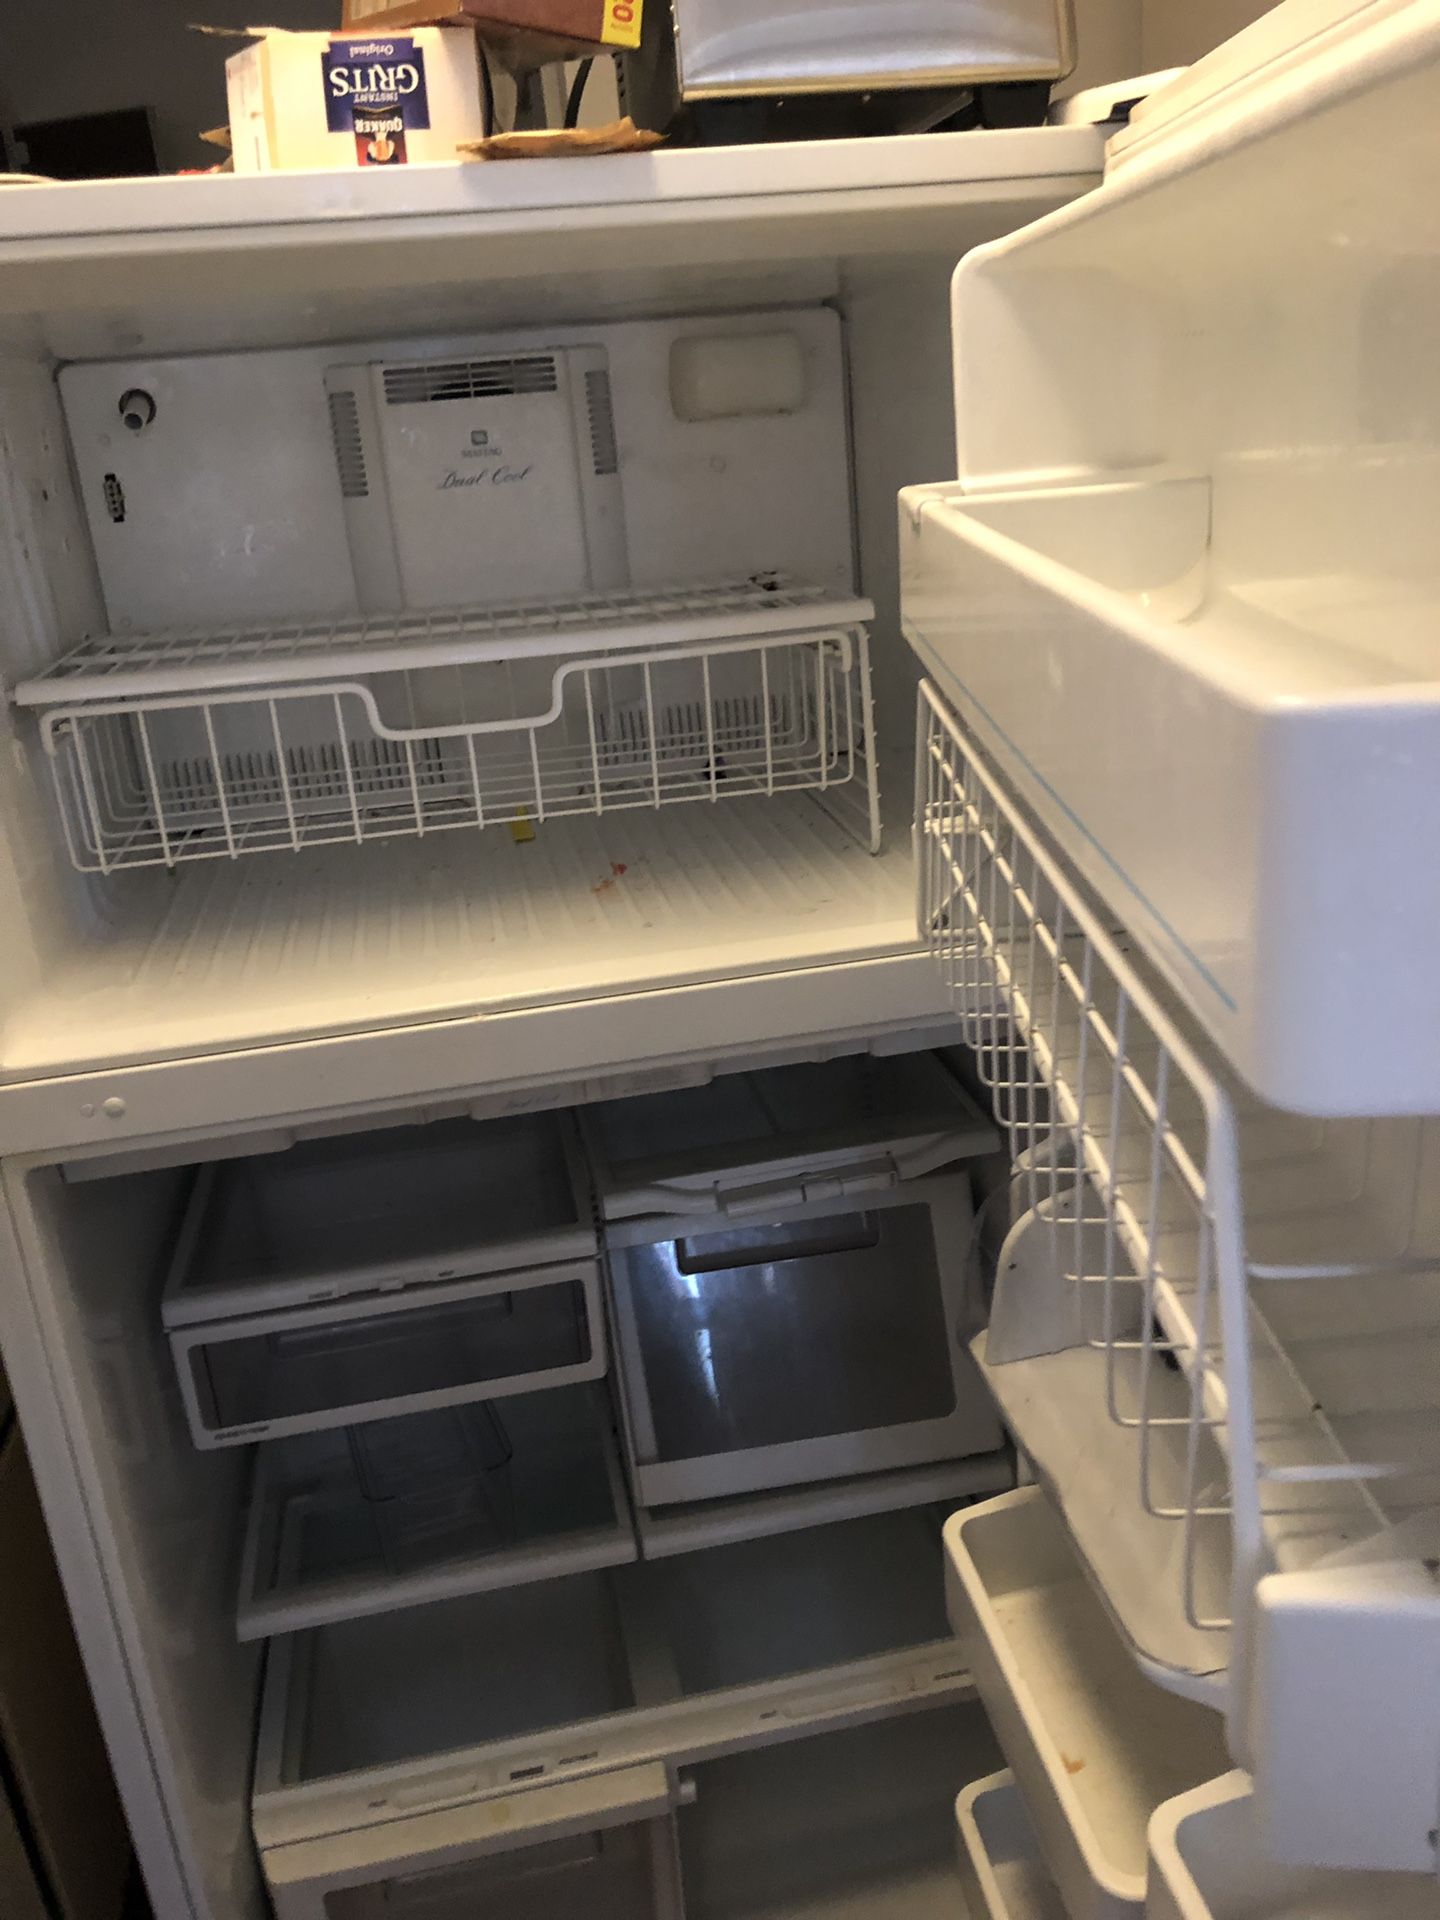 Maytag plus fridge+freezer combo